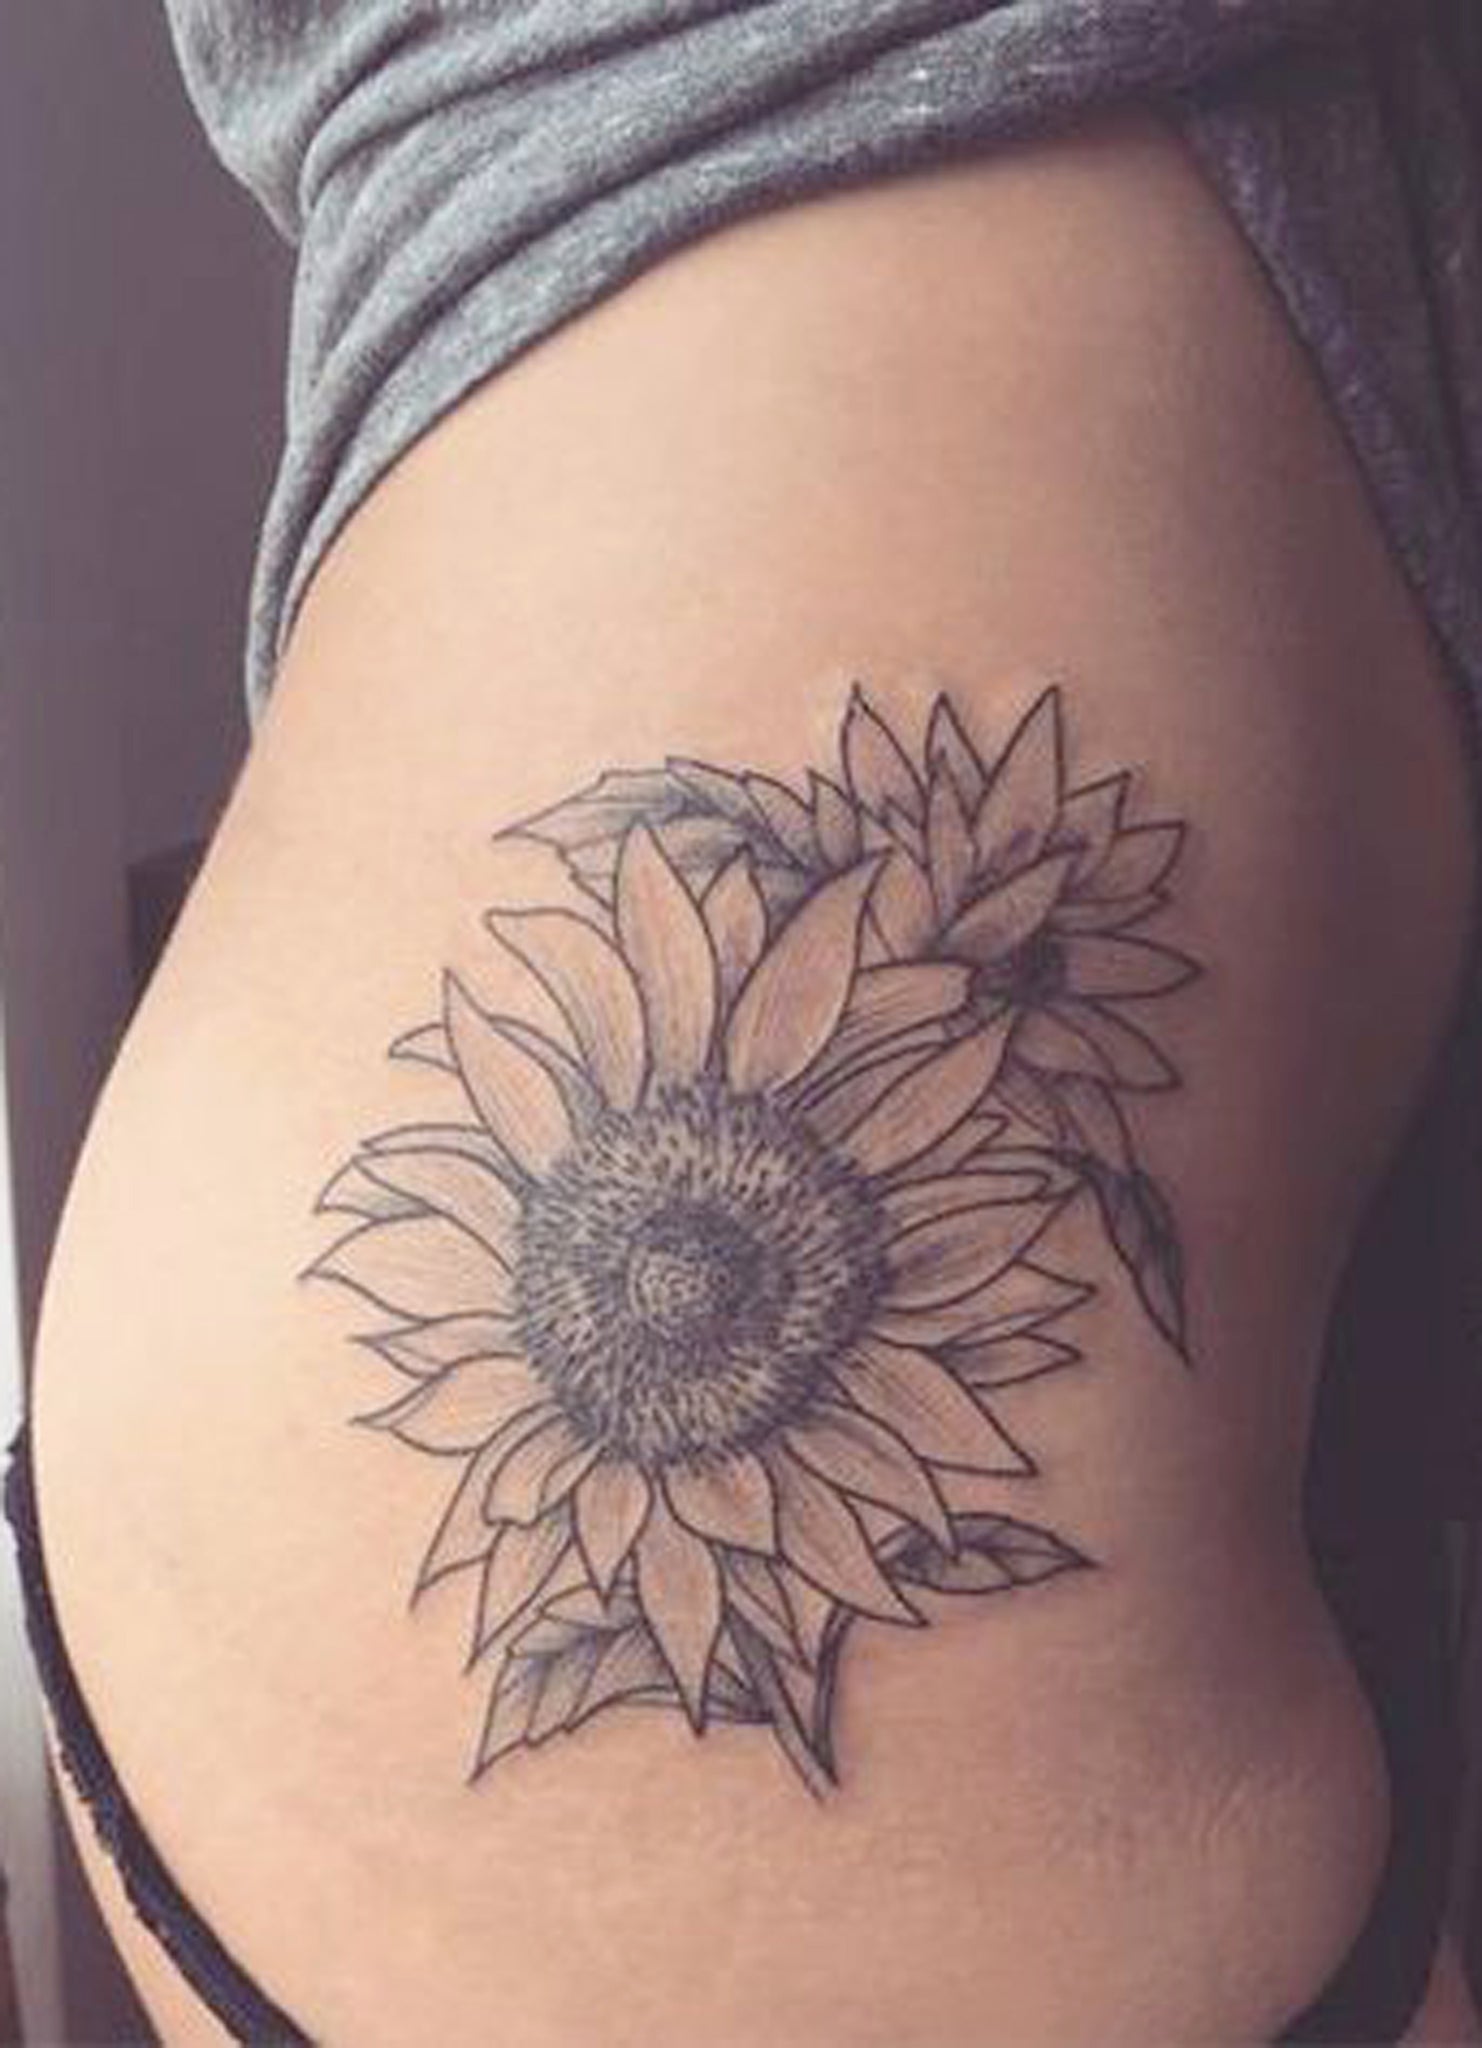 Sunflower Thigh Tattoo Ideas for Women - Black Floral Flower Side Hip Tat -  ideas del tatuaje del muslo de girasol - www.MyBodiArt.com